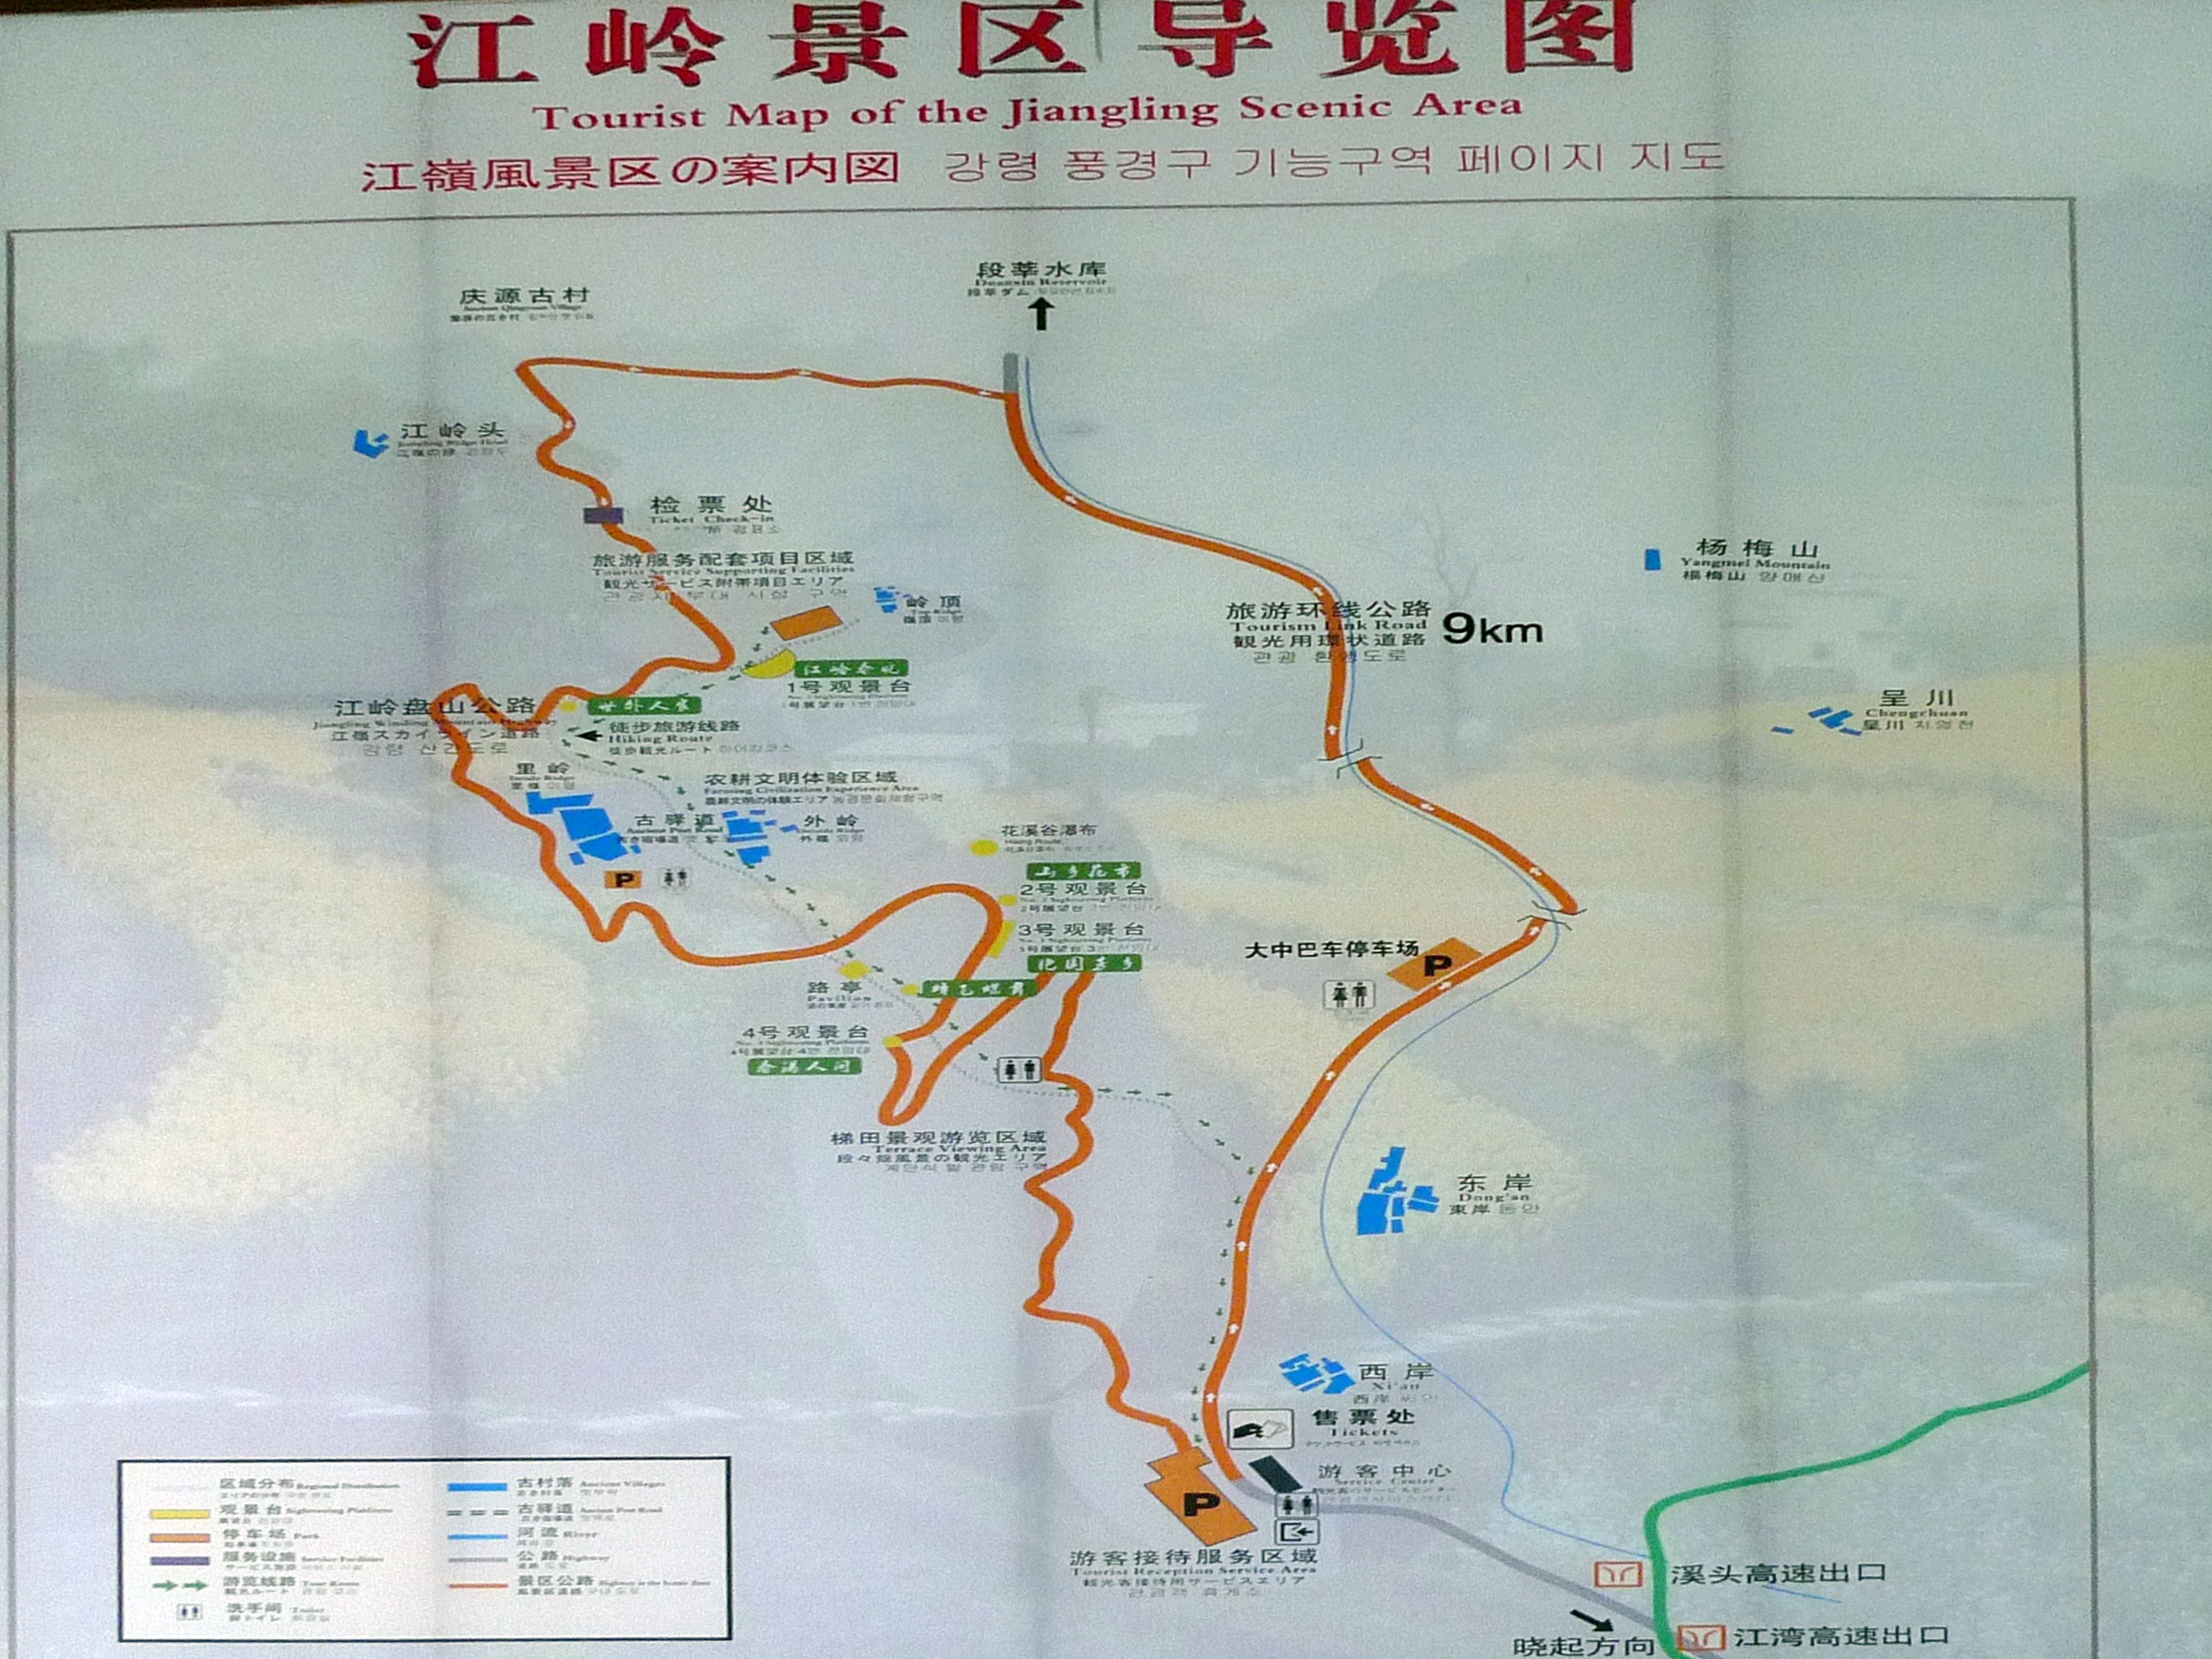 江西省的婺源江岭景区,经过几年的旅游资源开发,已经成为闻名全国的